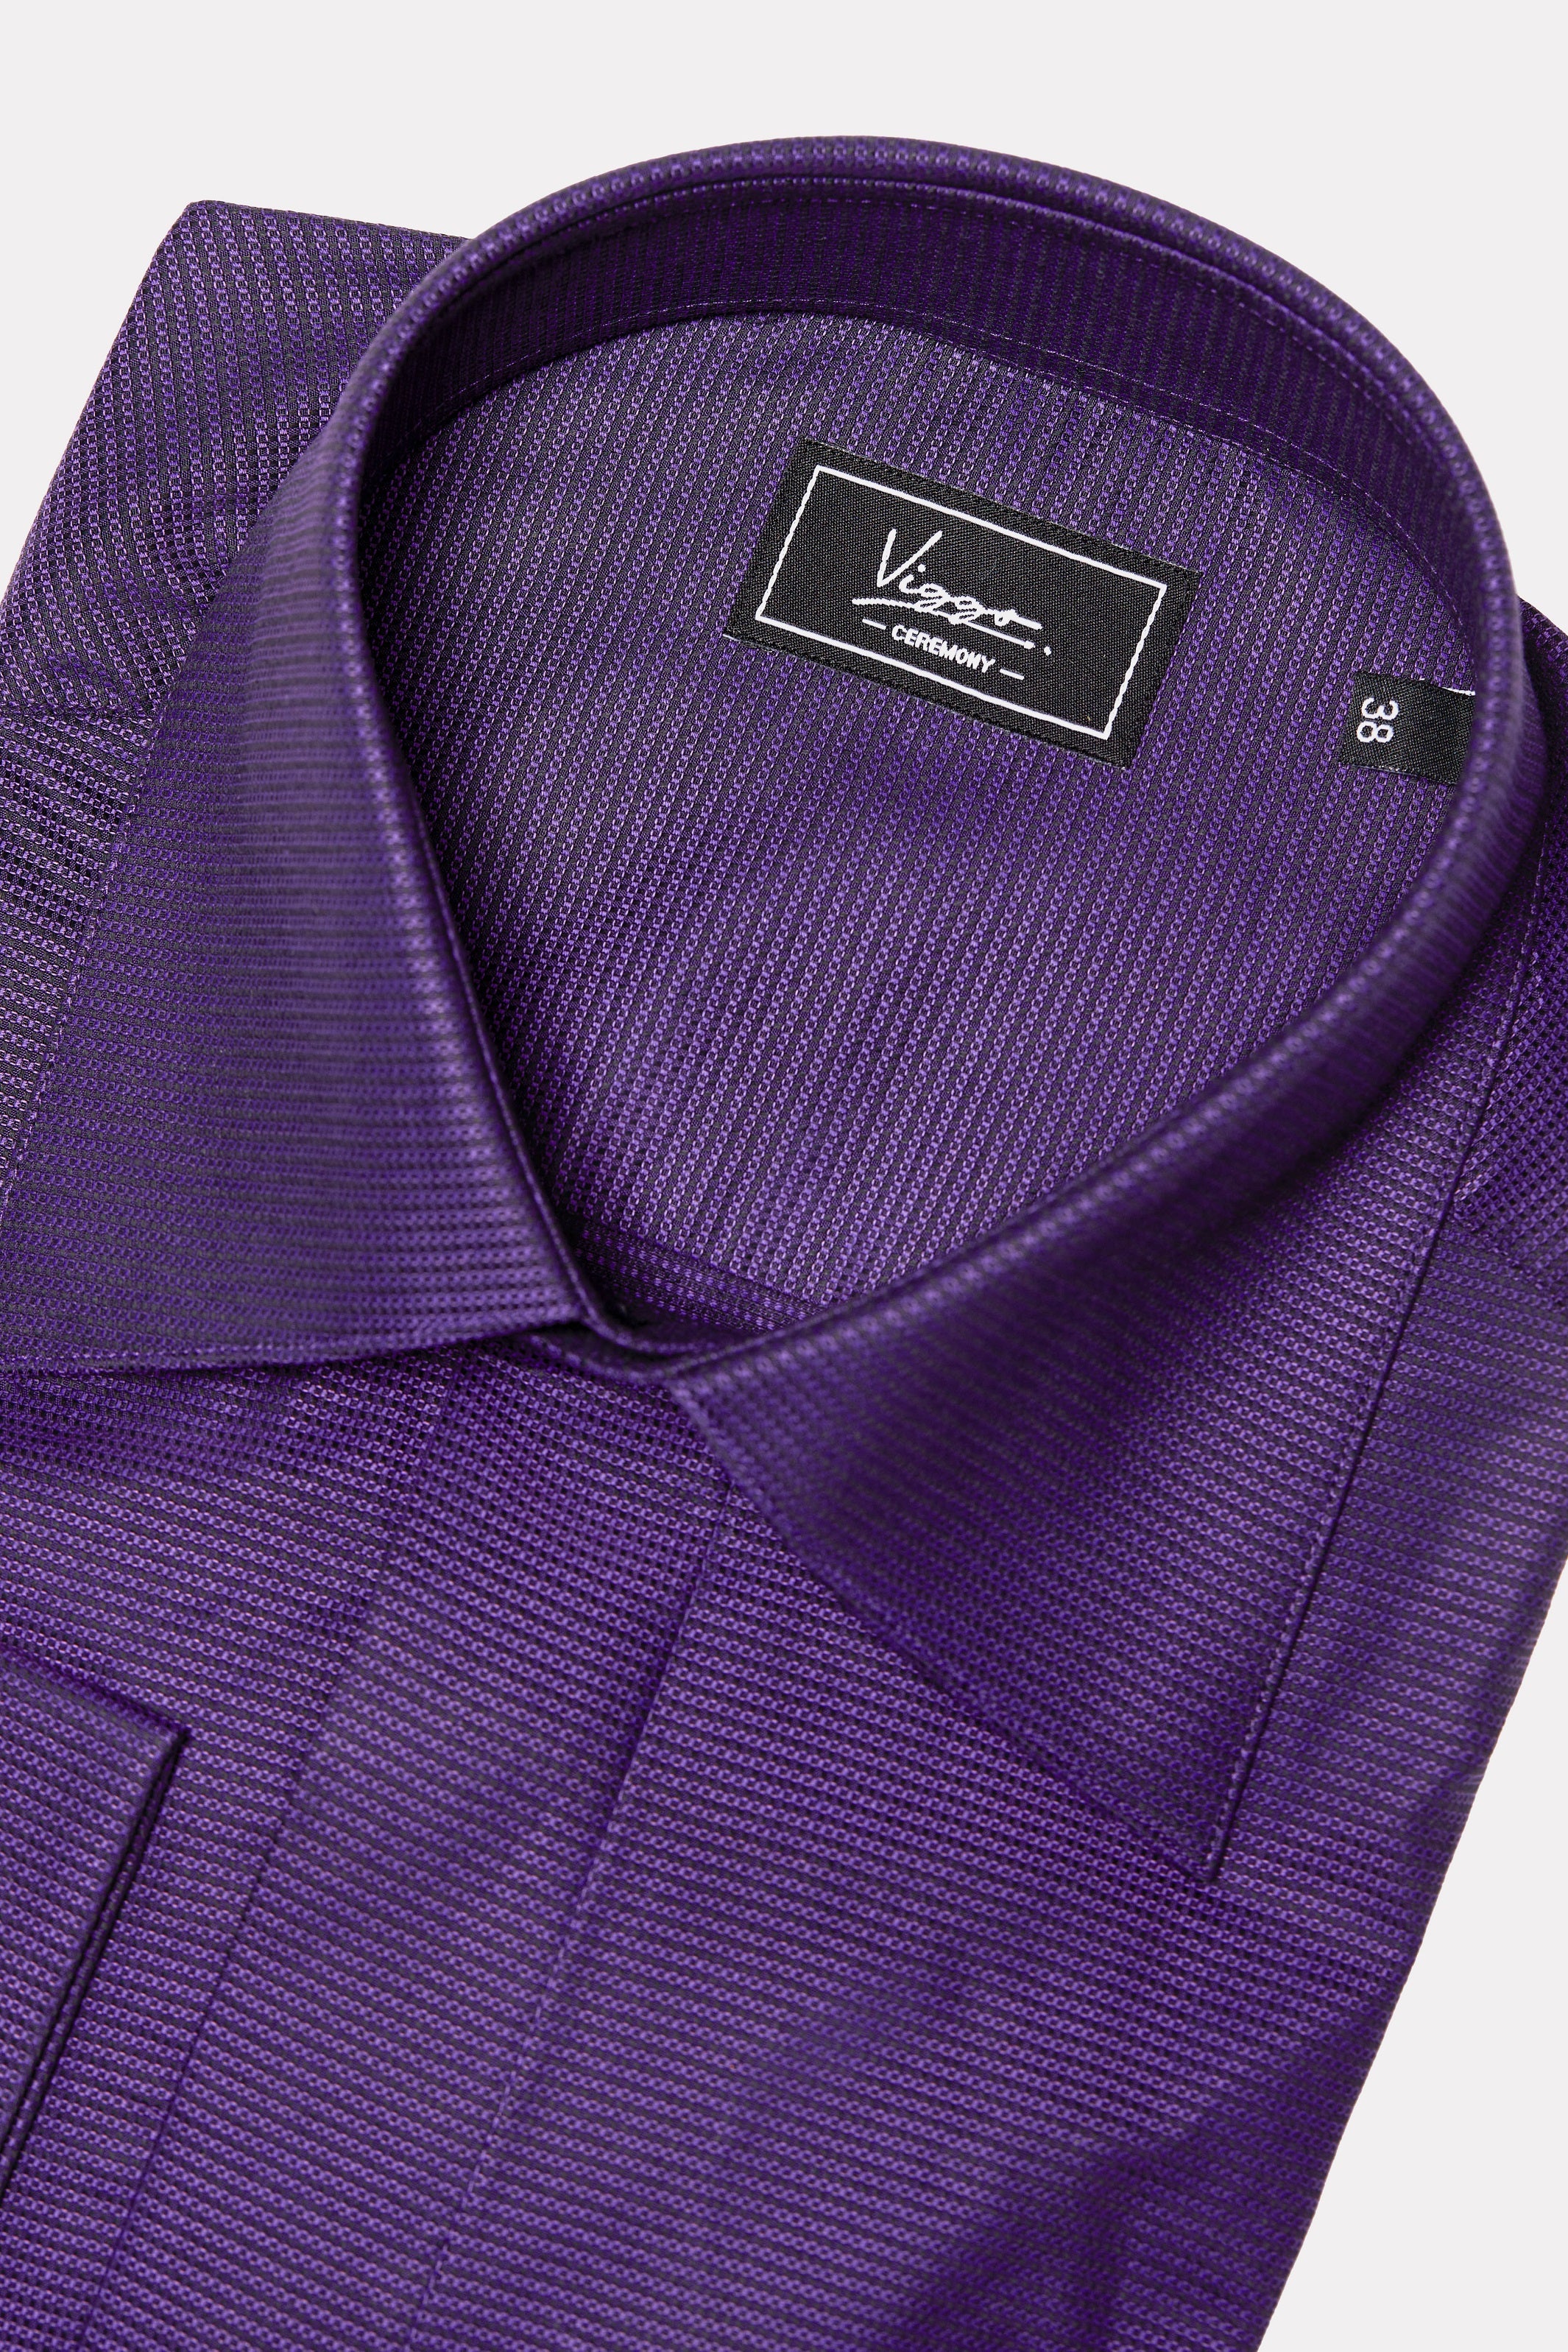 紫のストライプと隠しボタンが付いた黒のテクスチャード シャツ